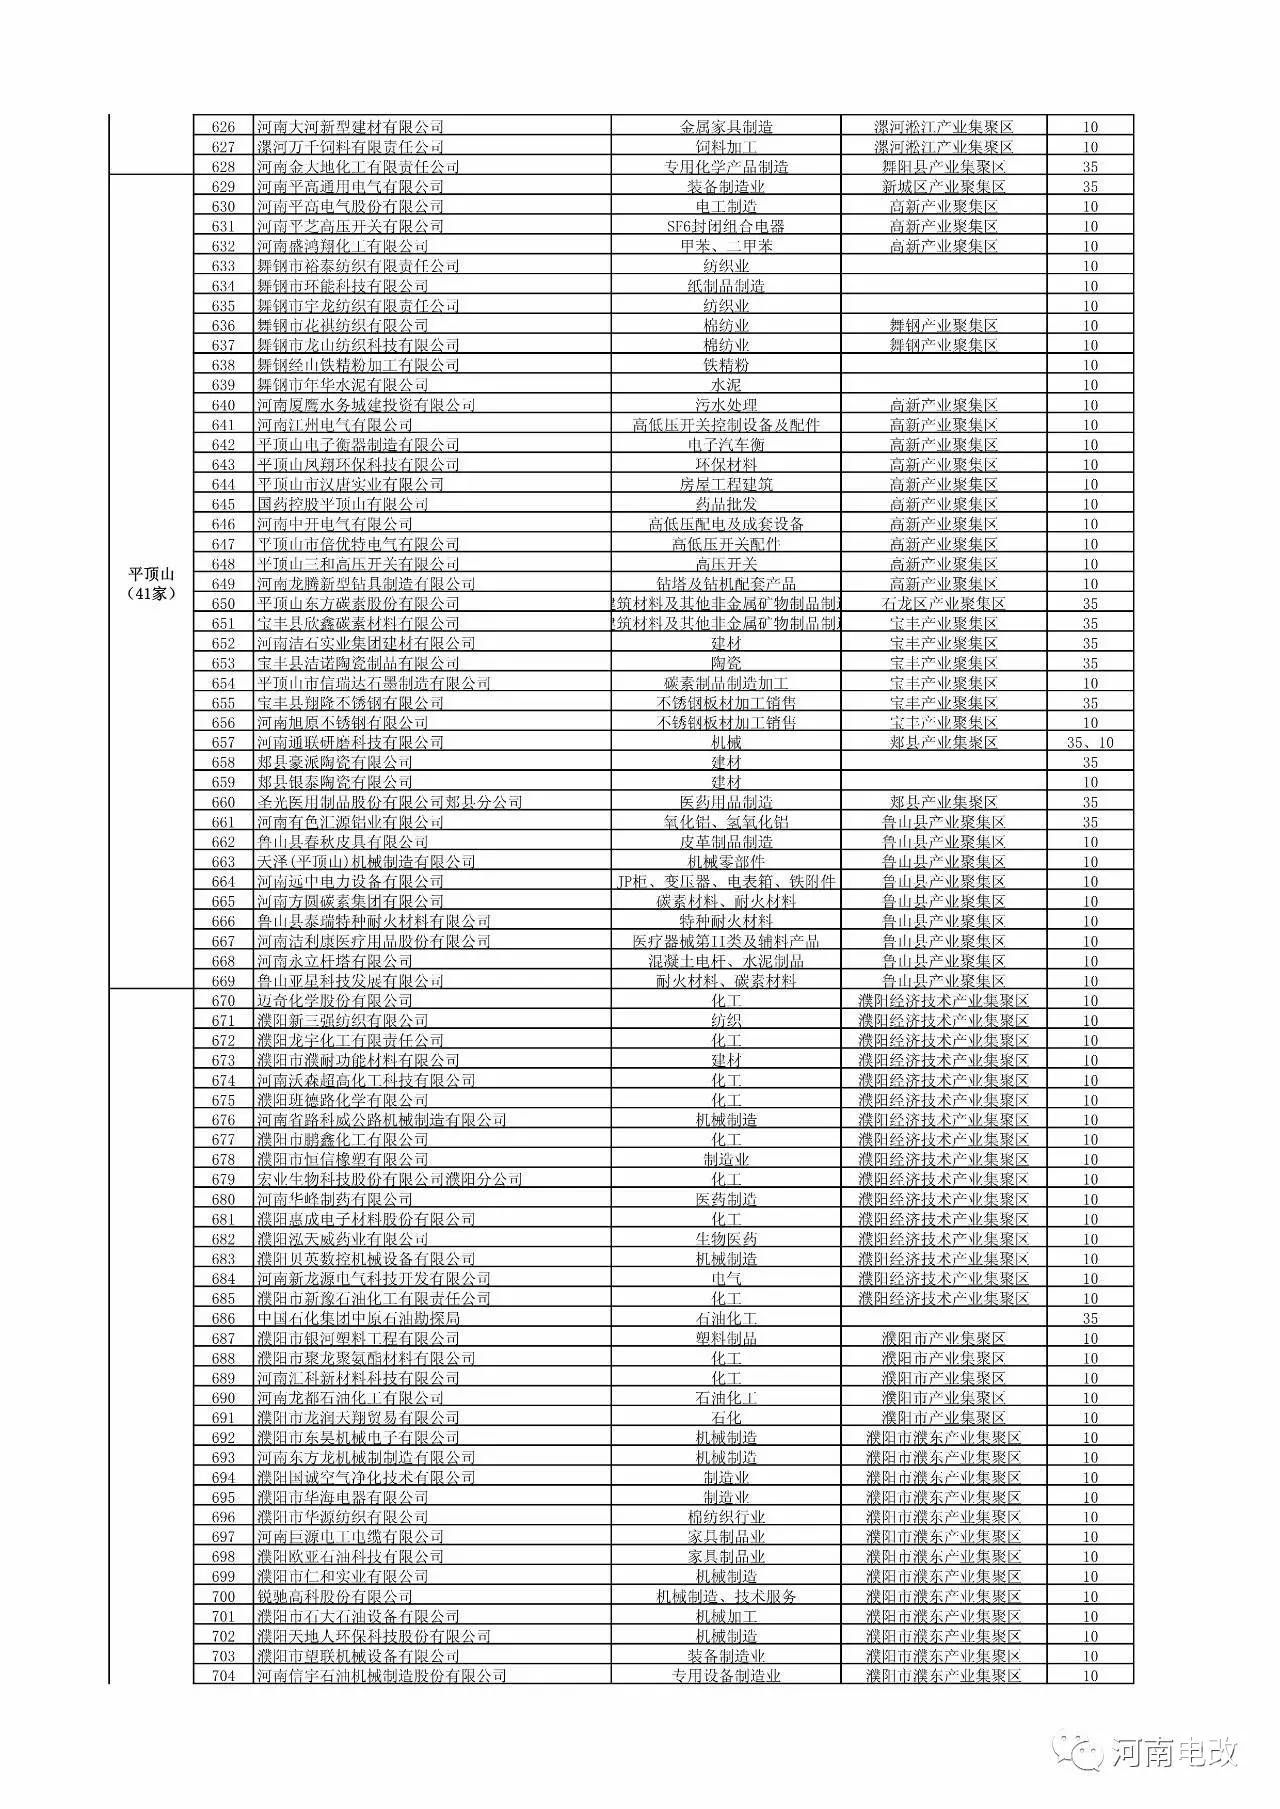 河南省2017年新增电力交易用户名单公示 1829家